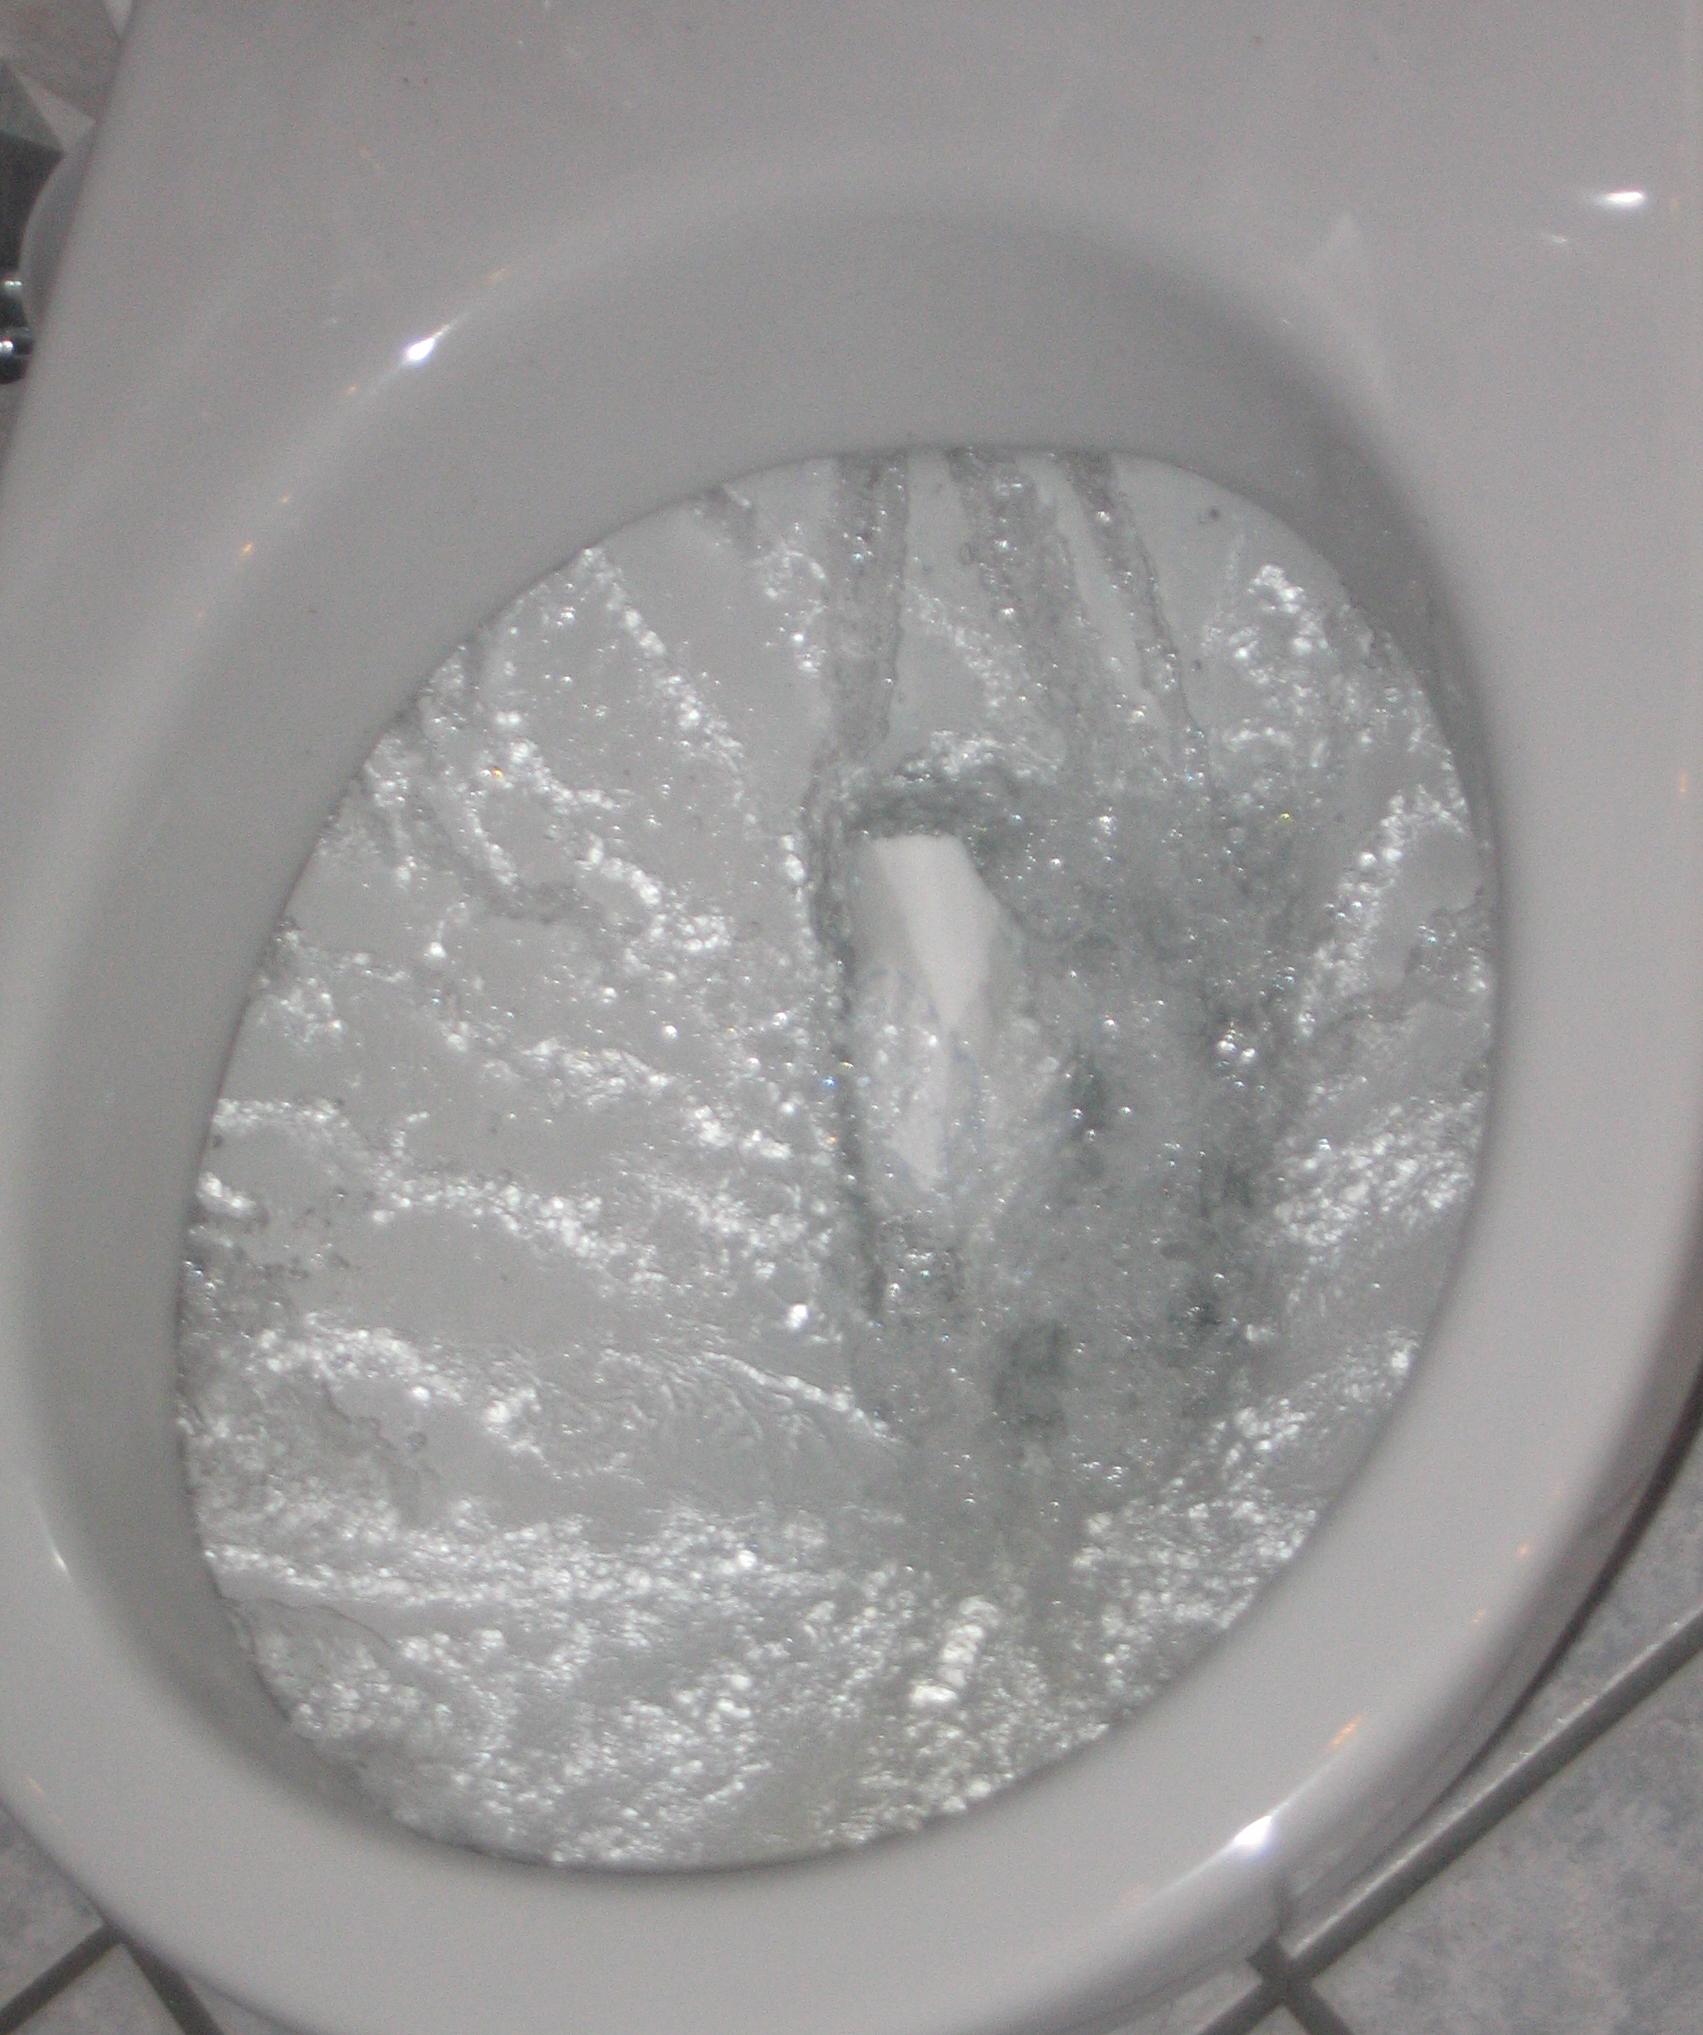 flushing_toilet